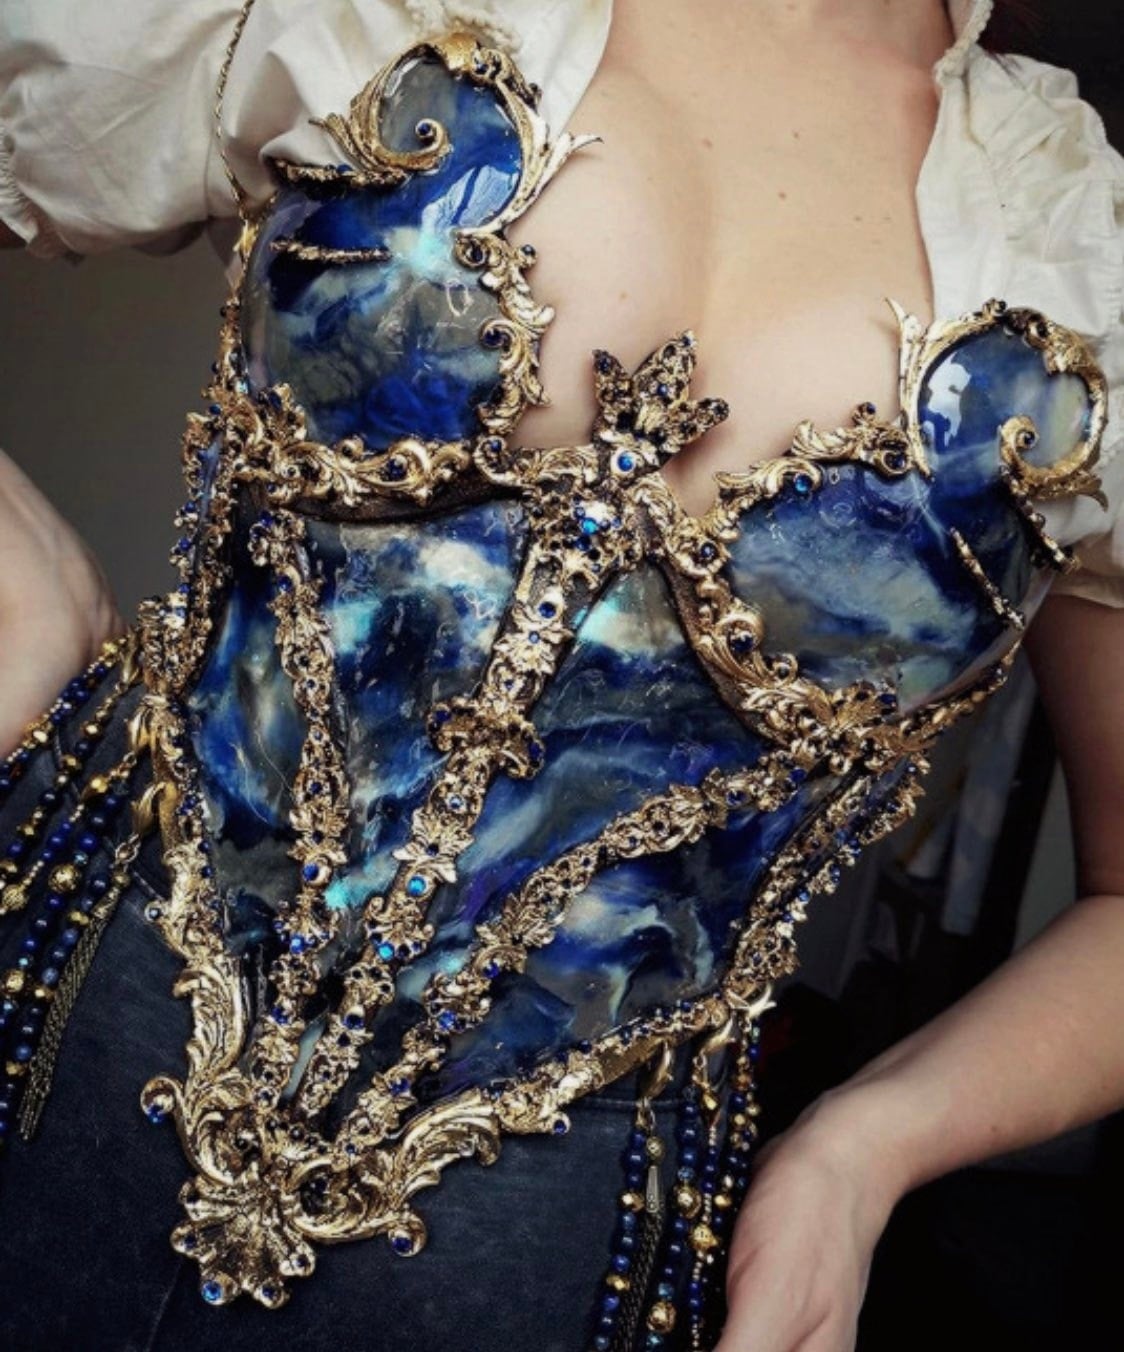 Dù vậy, đây vẫn là một món đồ thời trang xứng đáng để bạn đầu tư nếu bạn đam mê thời trang cổ điển, thích corset lại còn yêu gốm sứ!